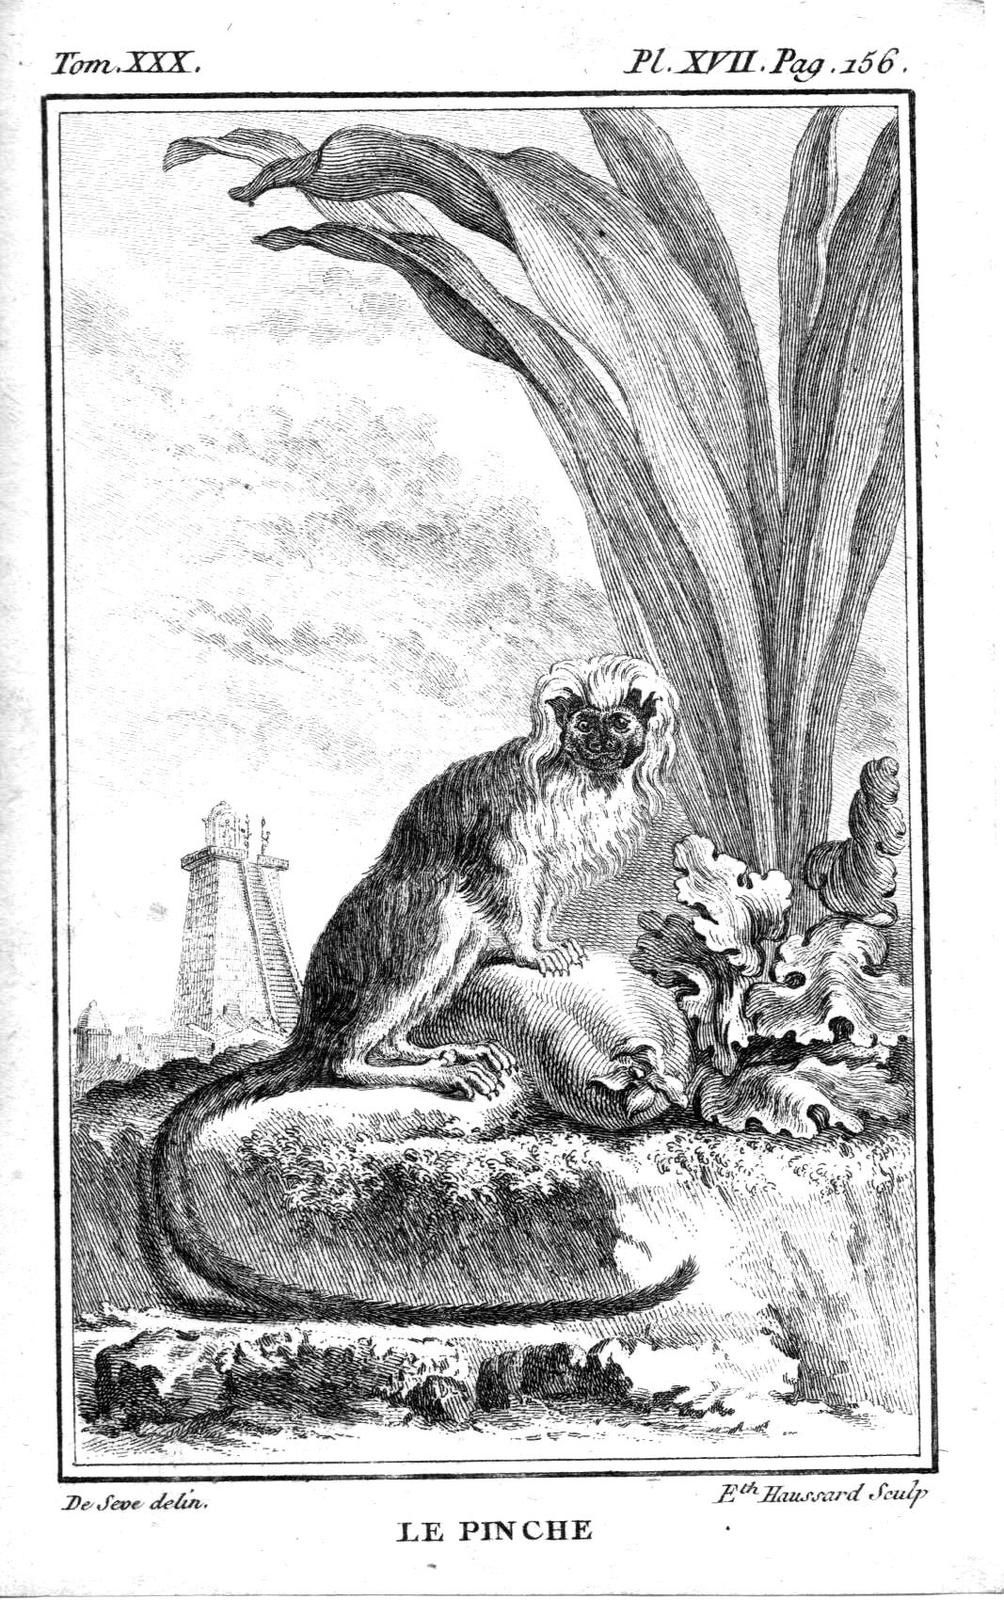 Nos cousins les singes. Gravures tirées d'une édition du XVIII° siècle des oeuvres de Buffon.